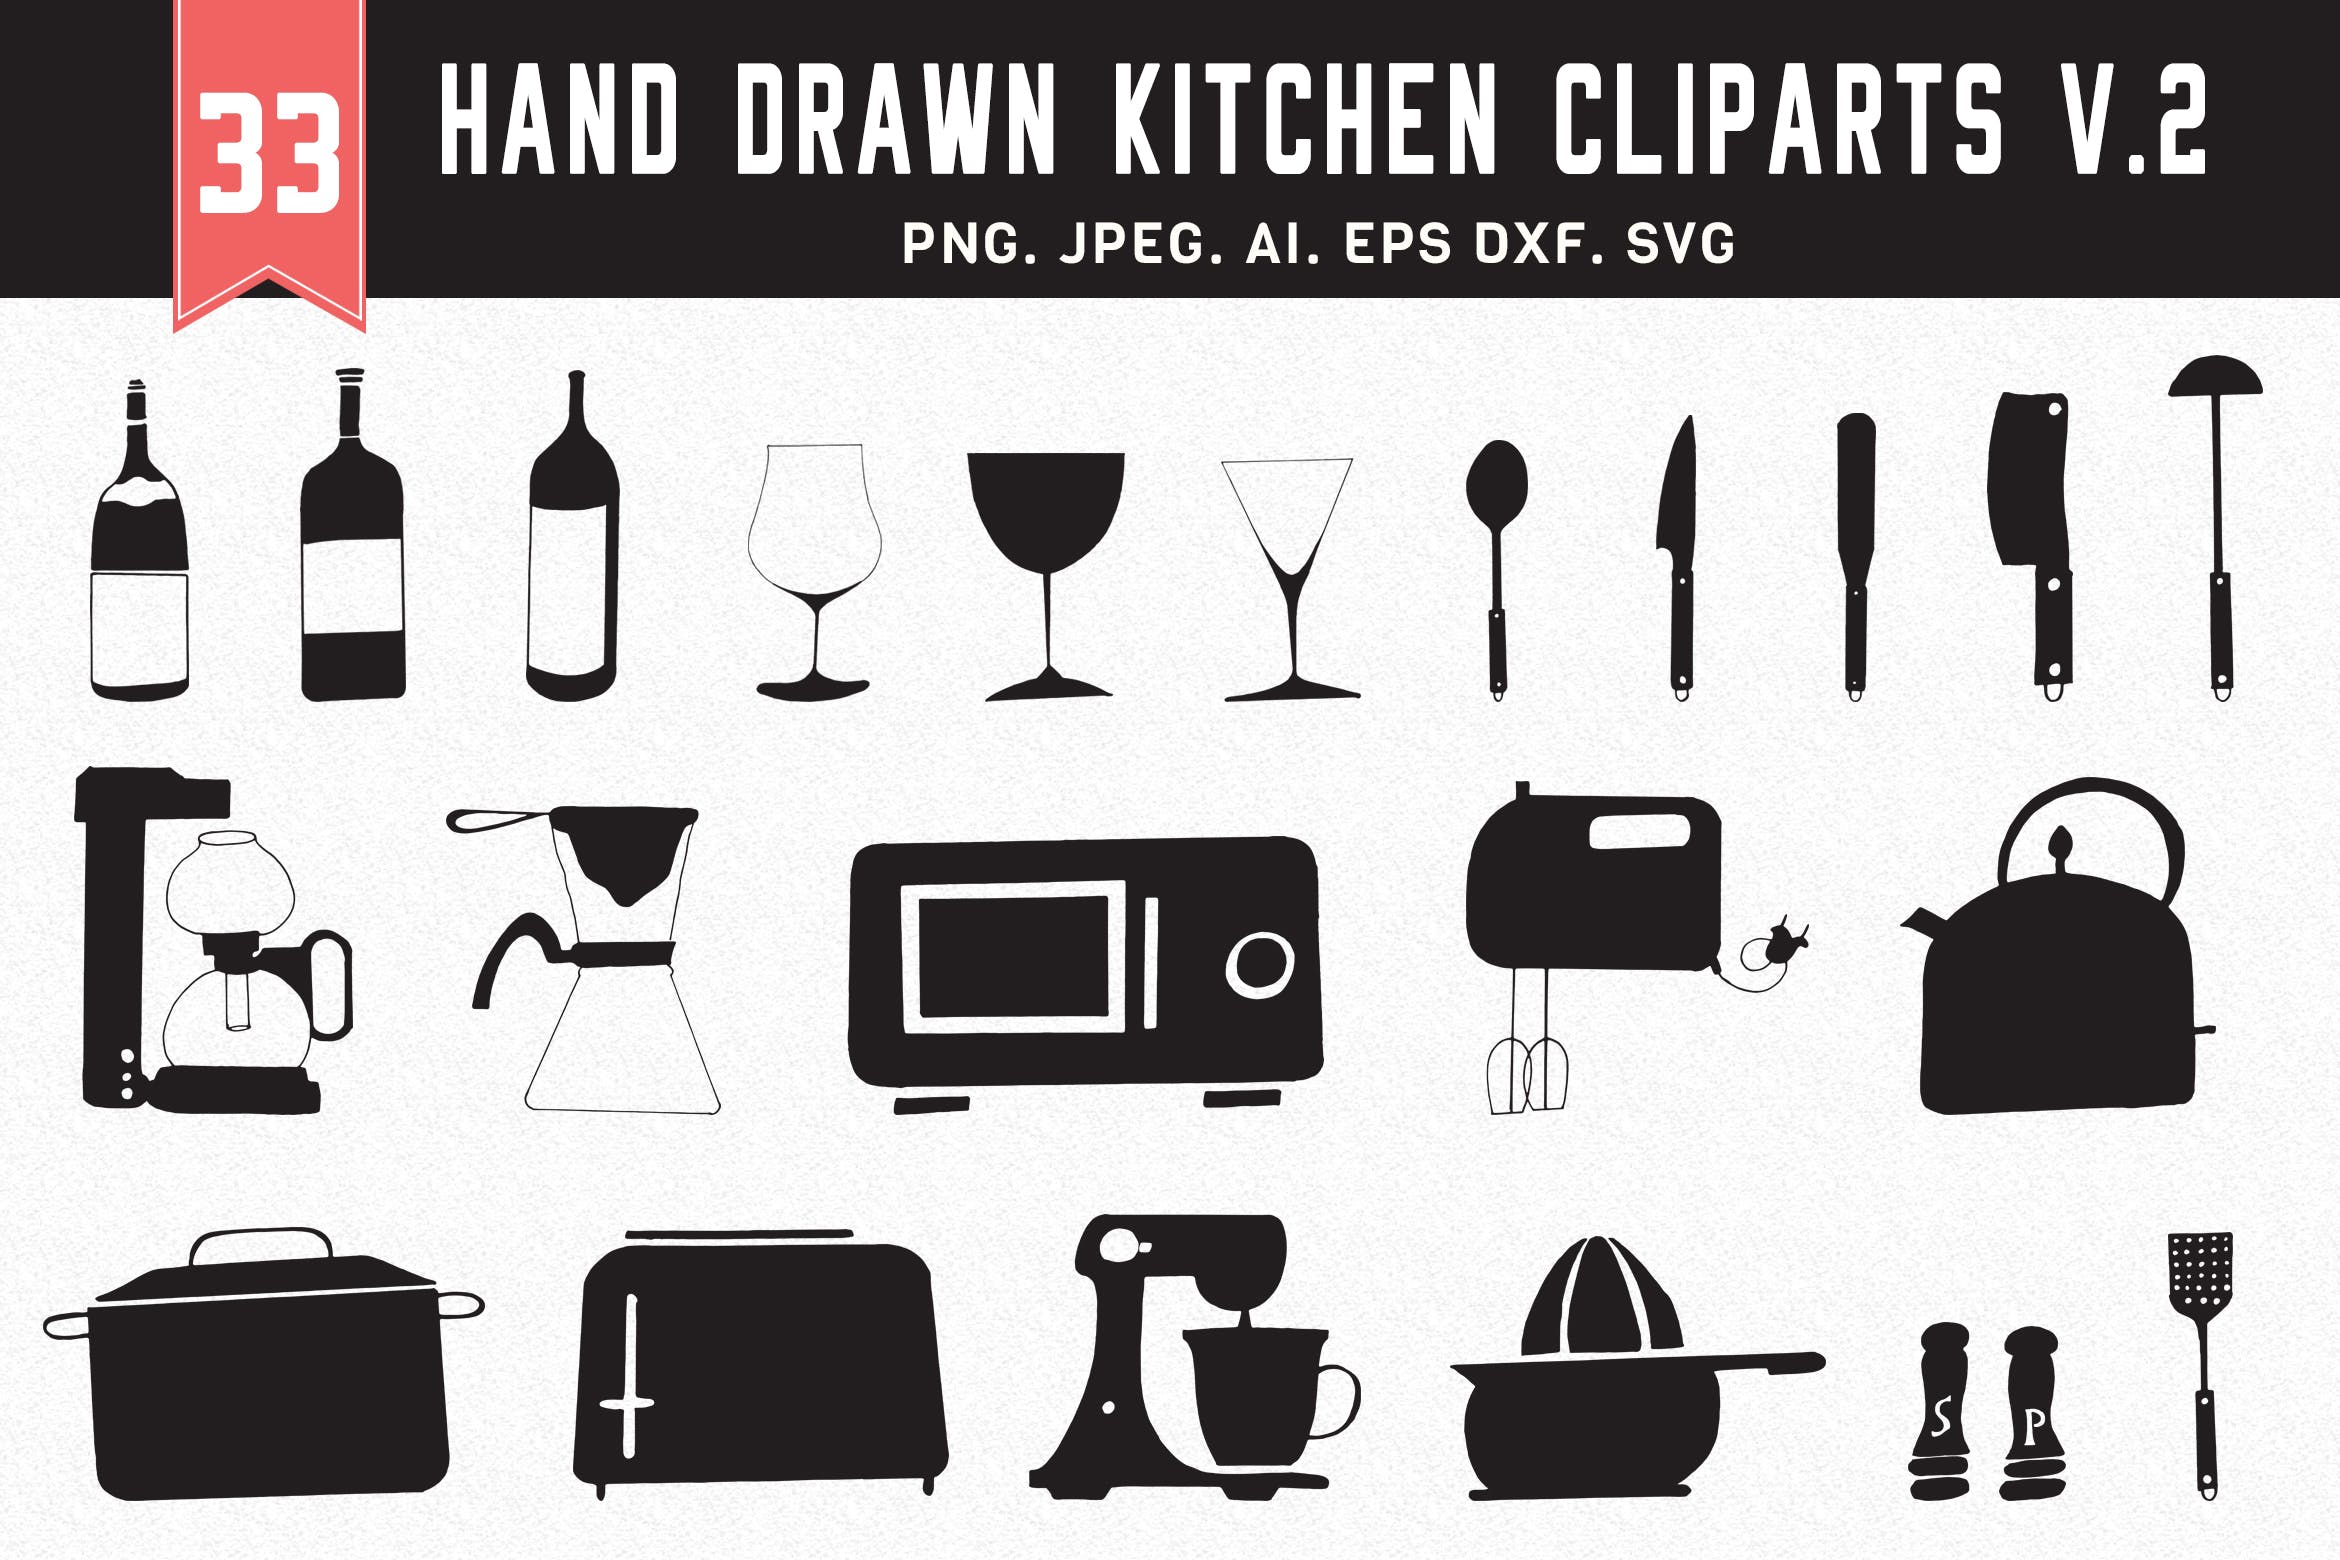 30+手绘厨房用具图案剪贴画素材合集v2 30+ Hand Drawn Kitchen Cliparts Ver. 2插图